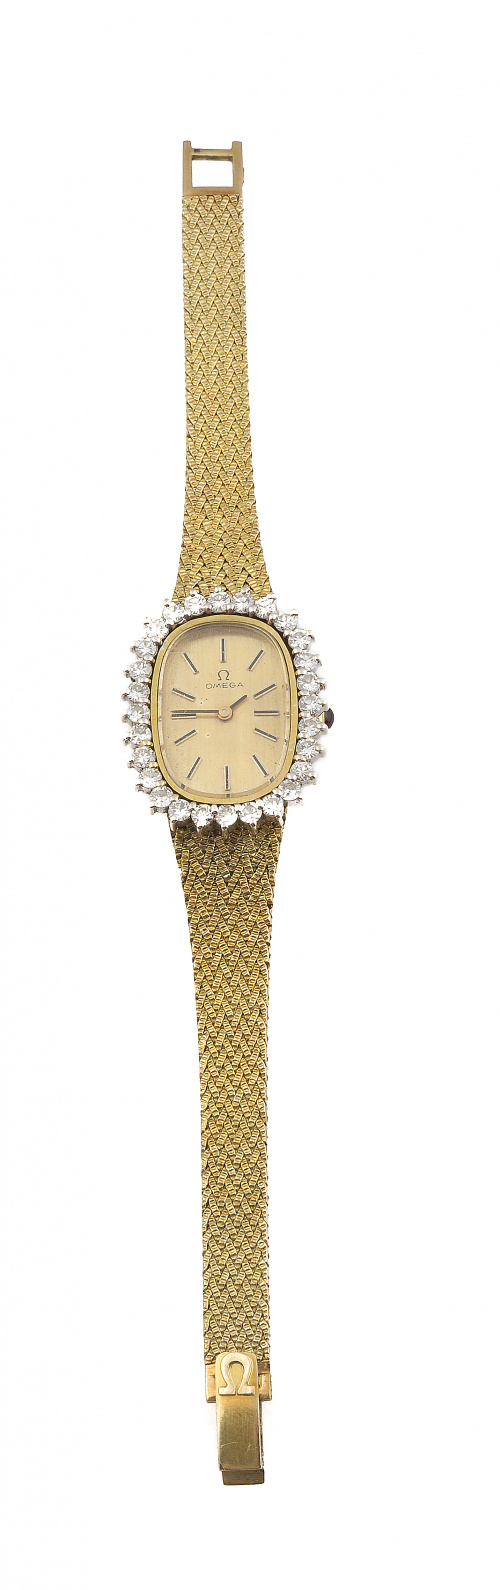 Reloj OMEGA en oro amarilo de 18K y brillantes, años 70